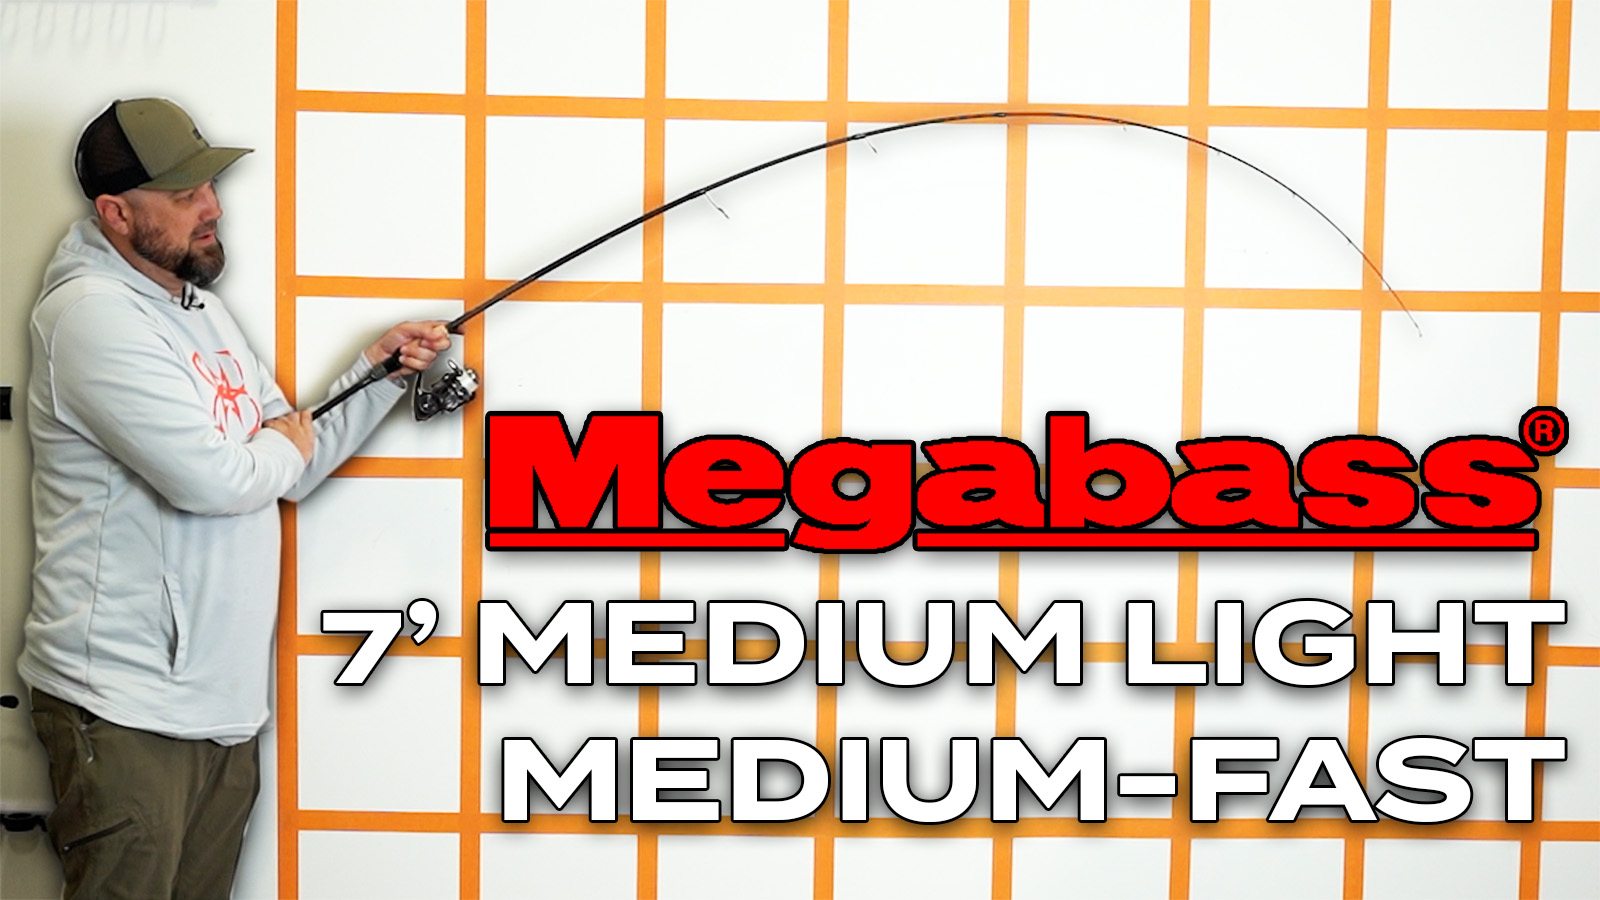 Megabass Orochi X10 / 7'0" / Medium-Light / Medium-Fast